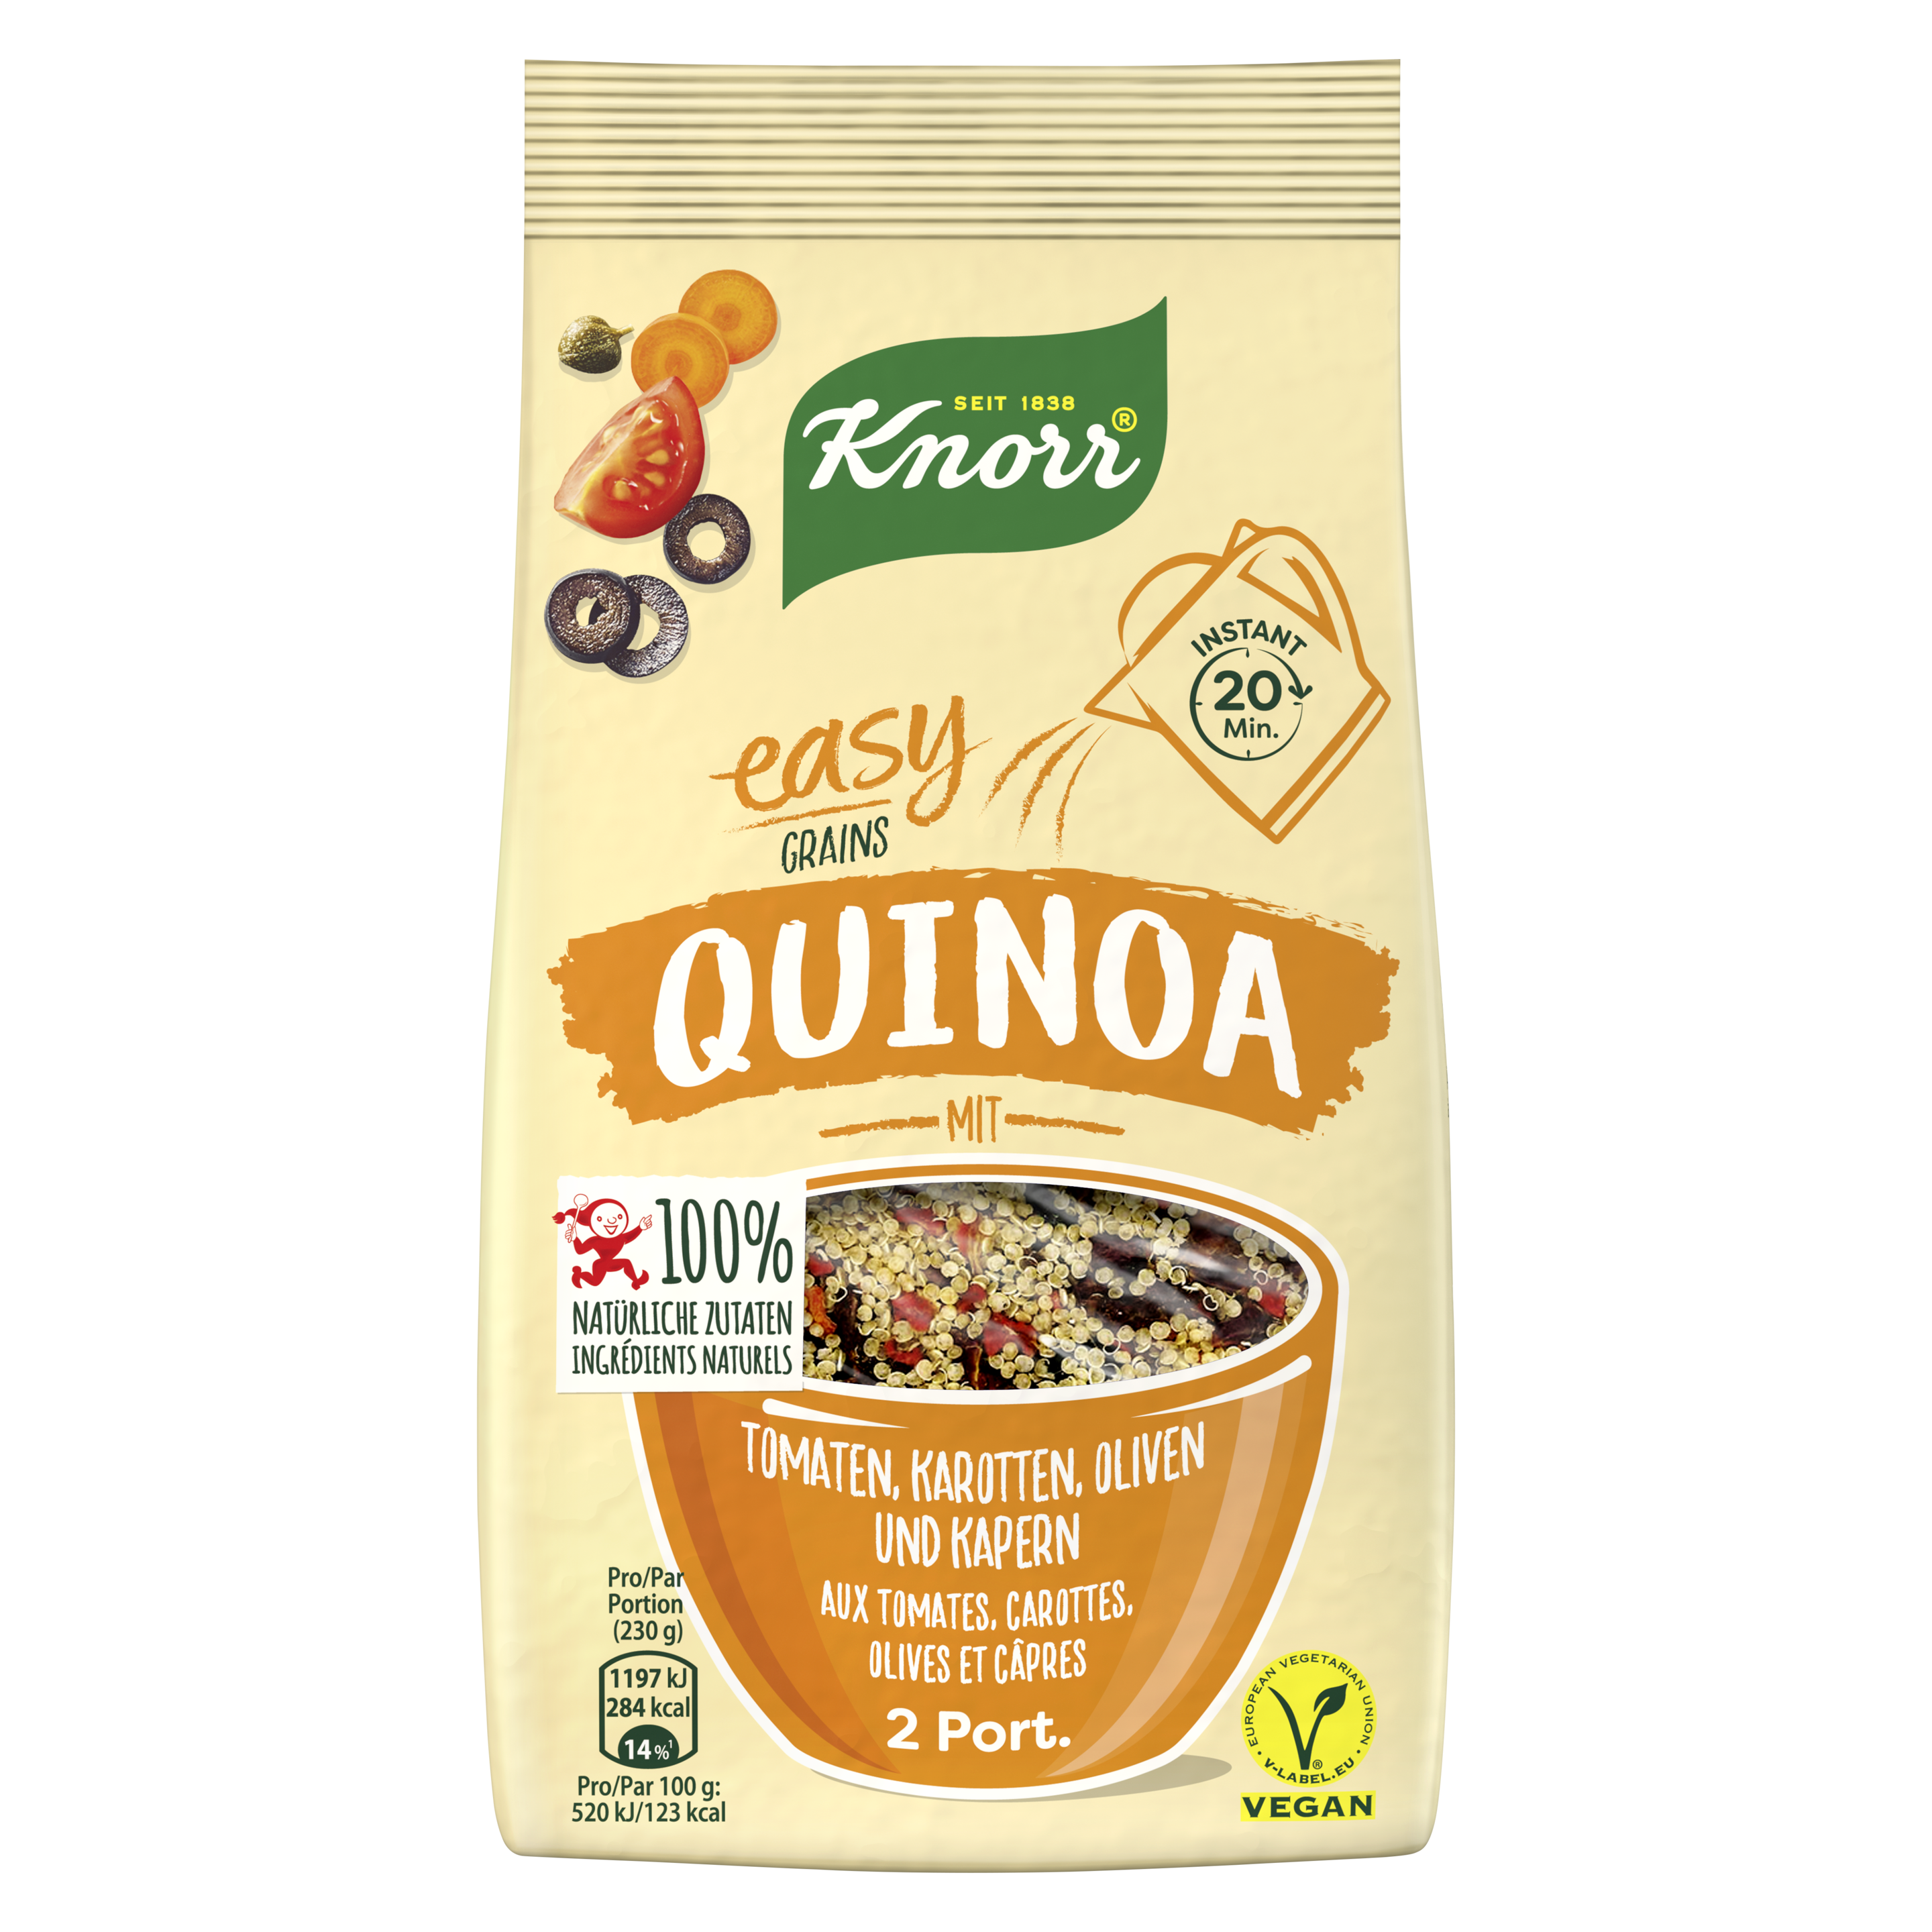 KNORR 100% natürliche Zutaten Easy Grains Quinoa mit Tomaten, Karotten, Oliven und Kapern Beutel 2 Portionen